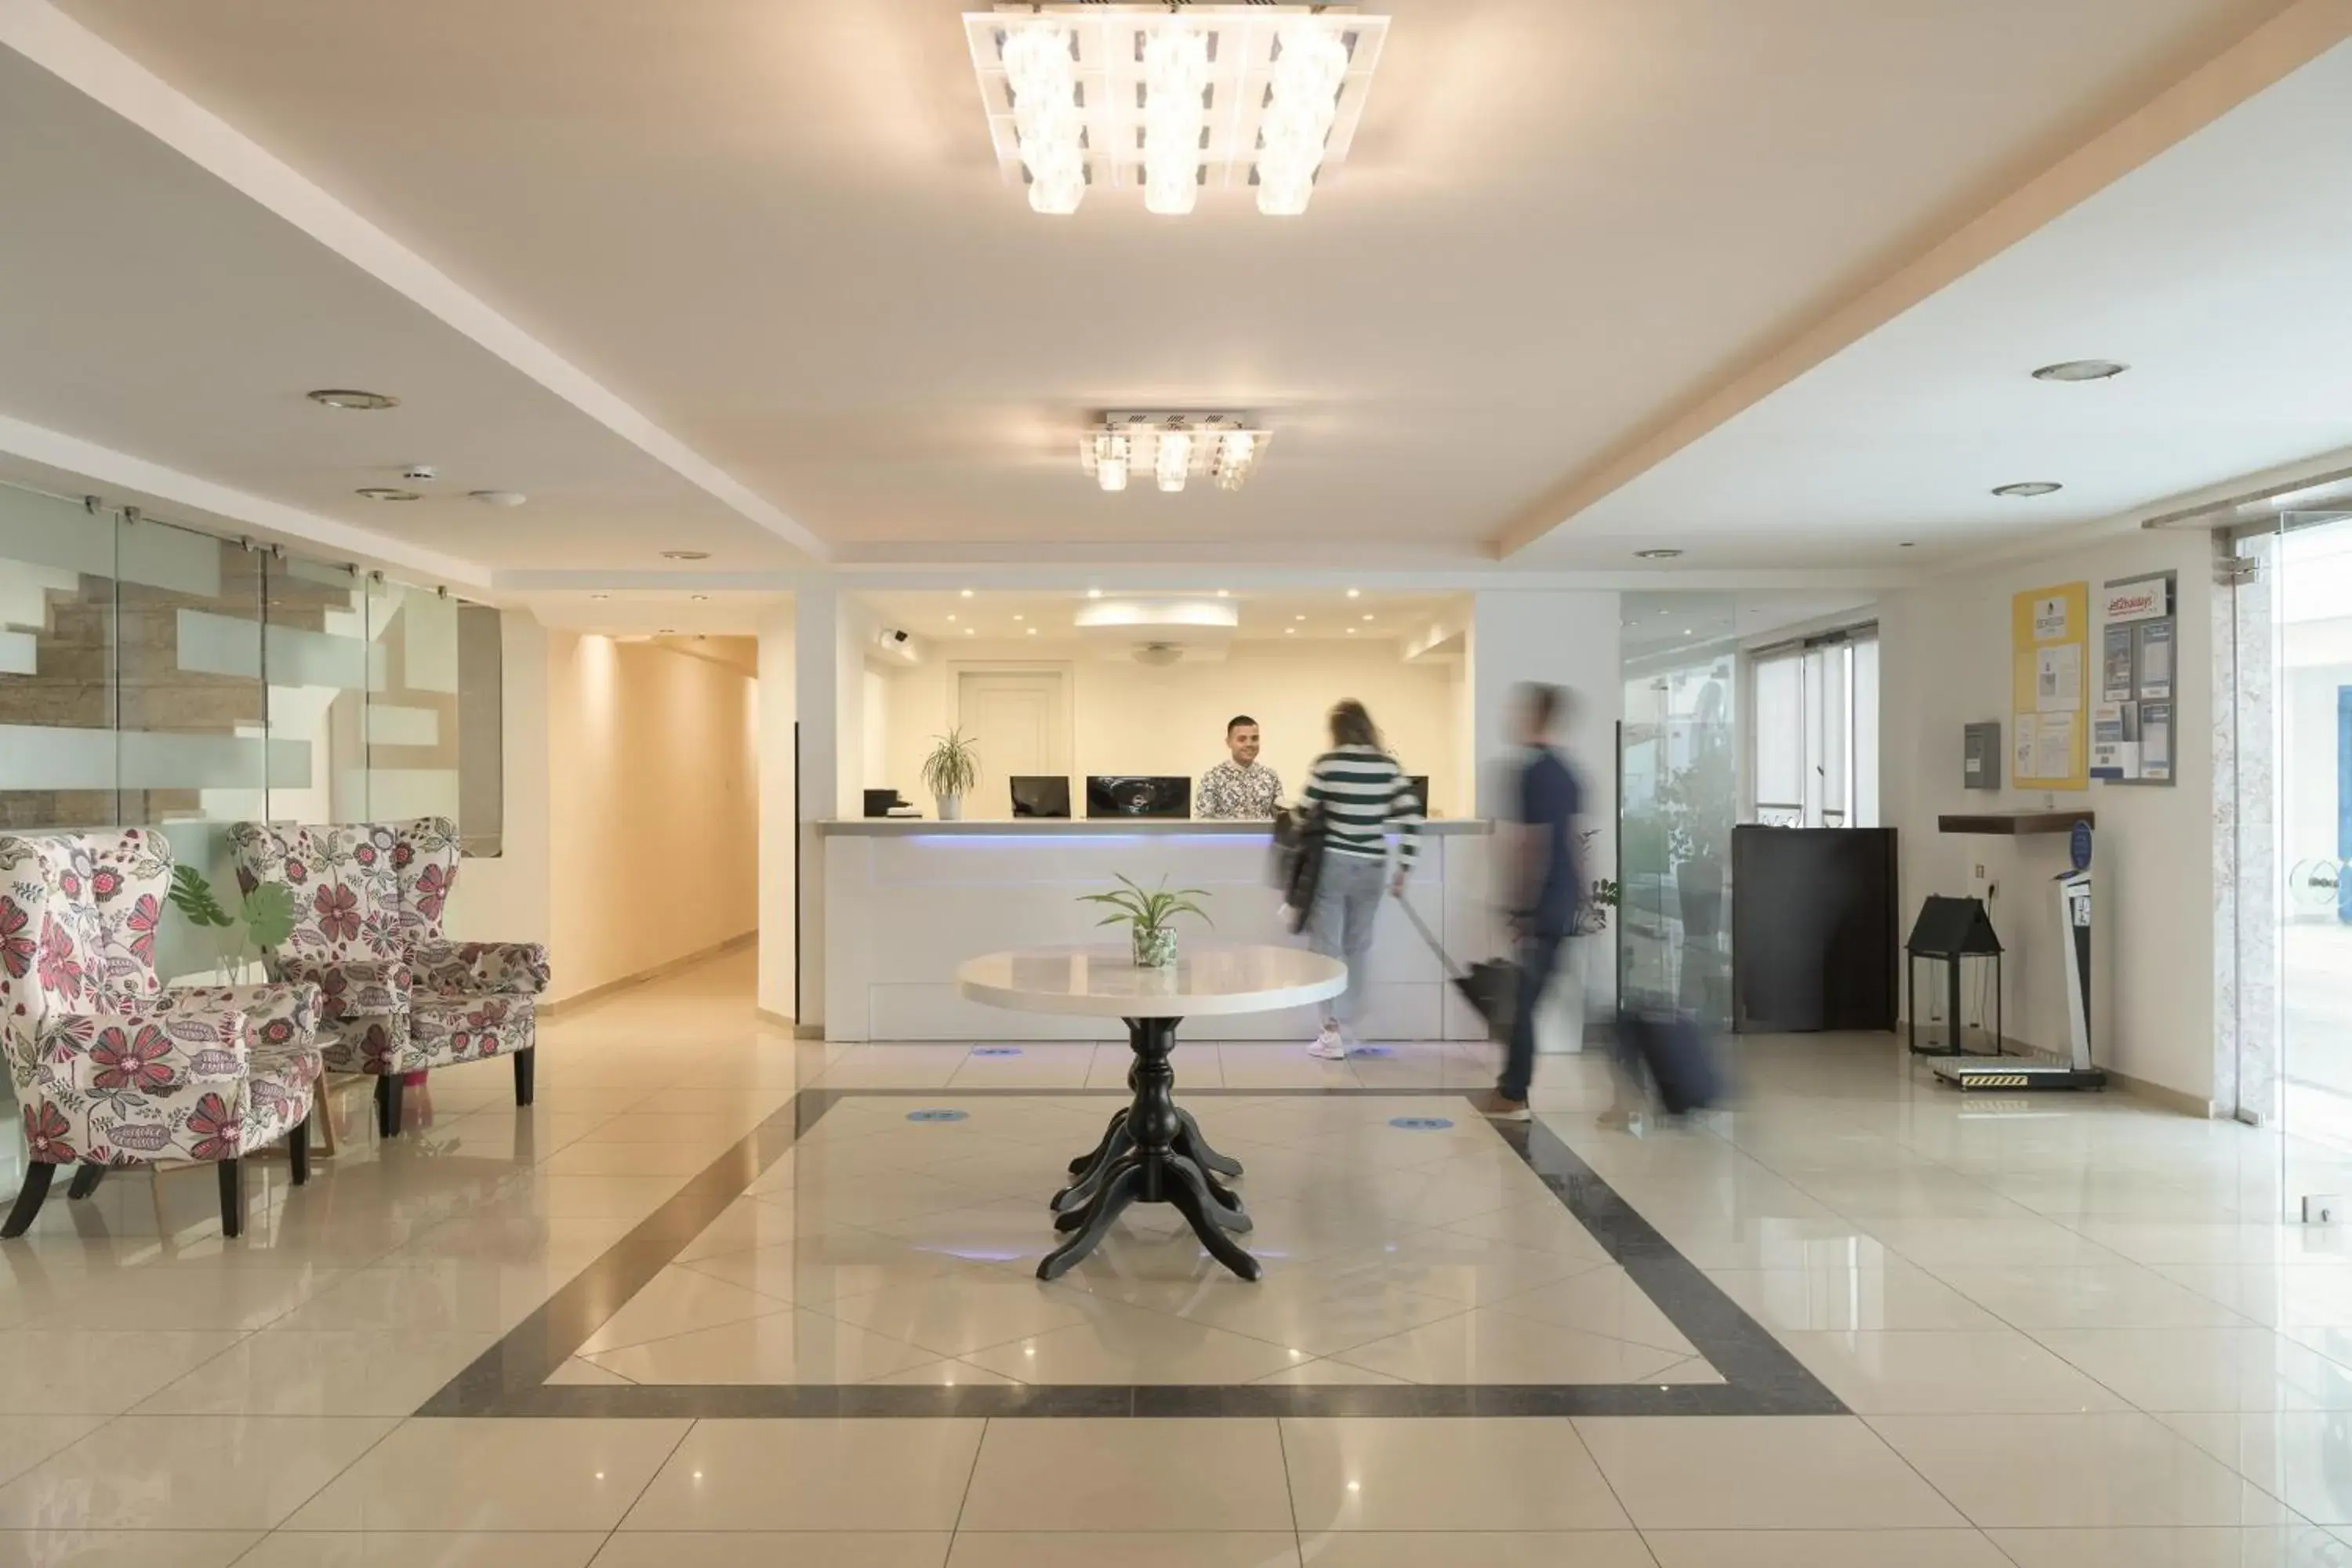 Lobby or reception, Lobby/Reception in Sergios Hotel